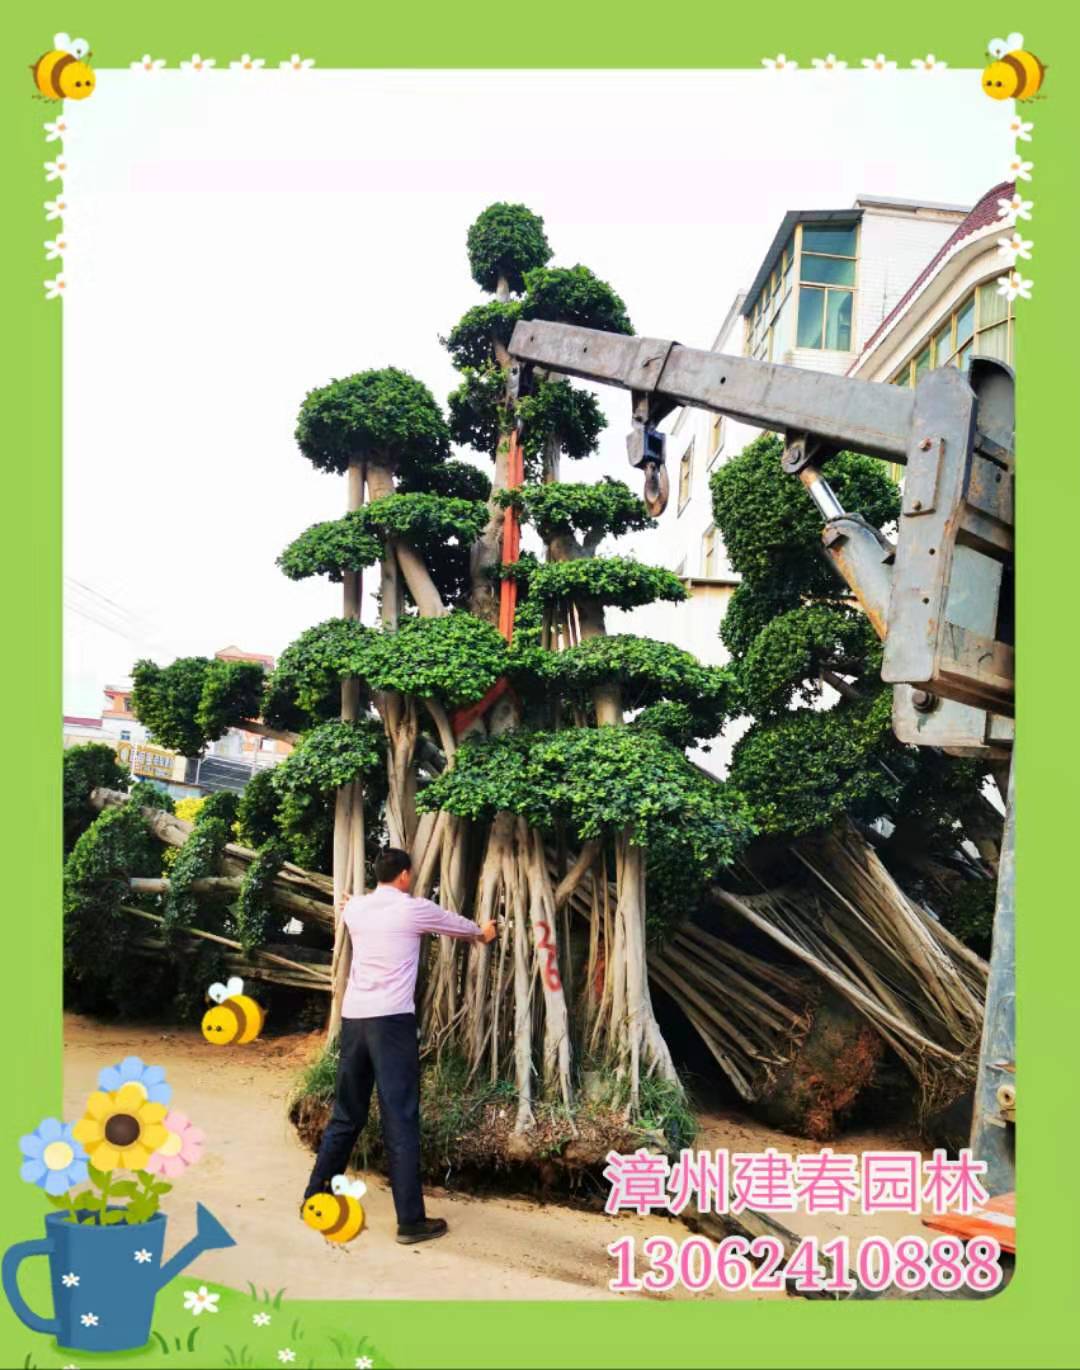 四川精品造型小叶榕&冠幅3米大型气根榕树盆景